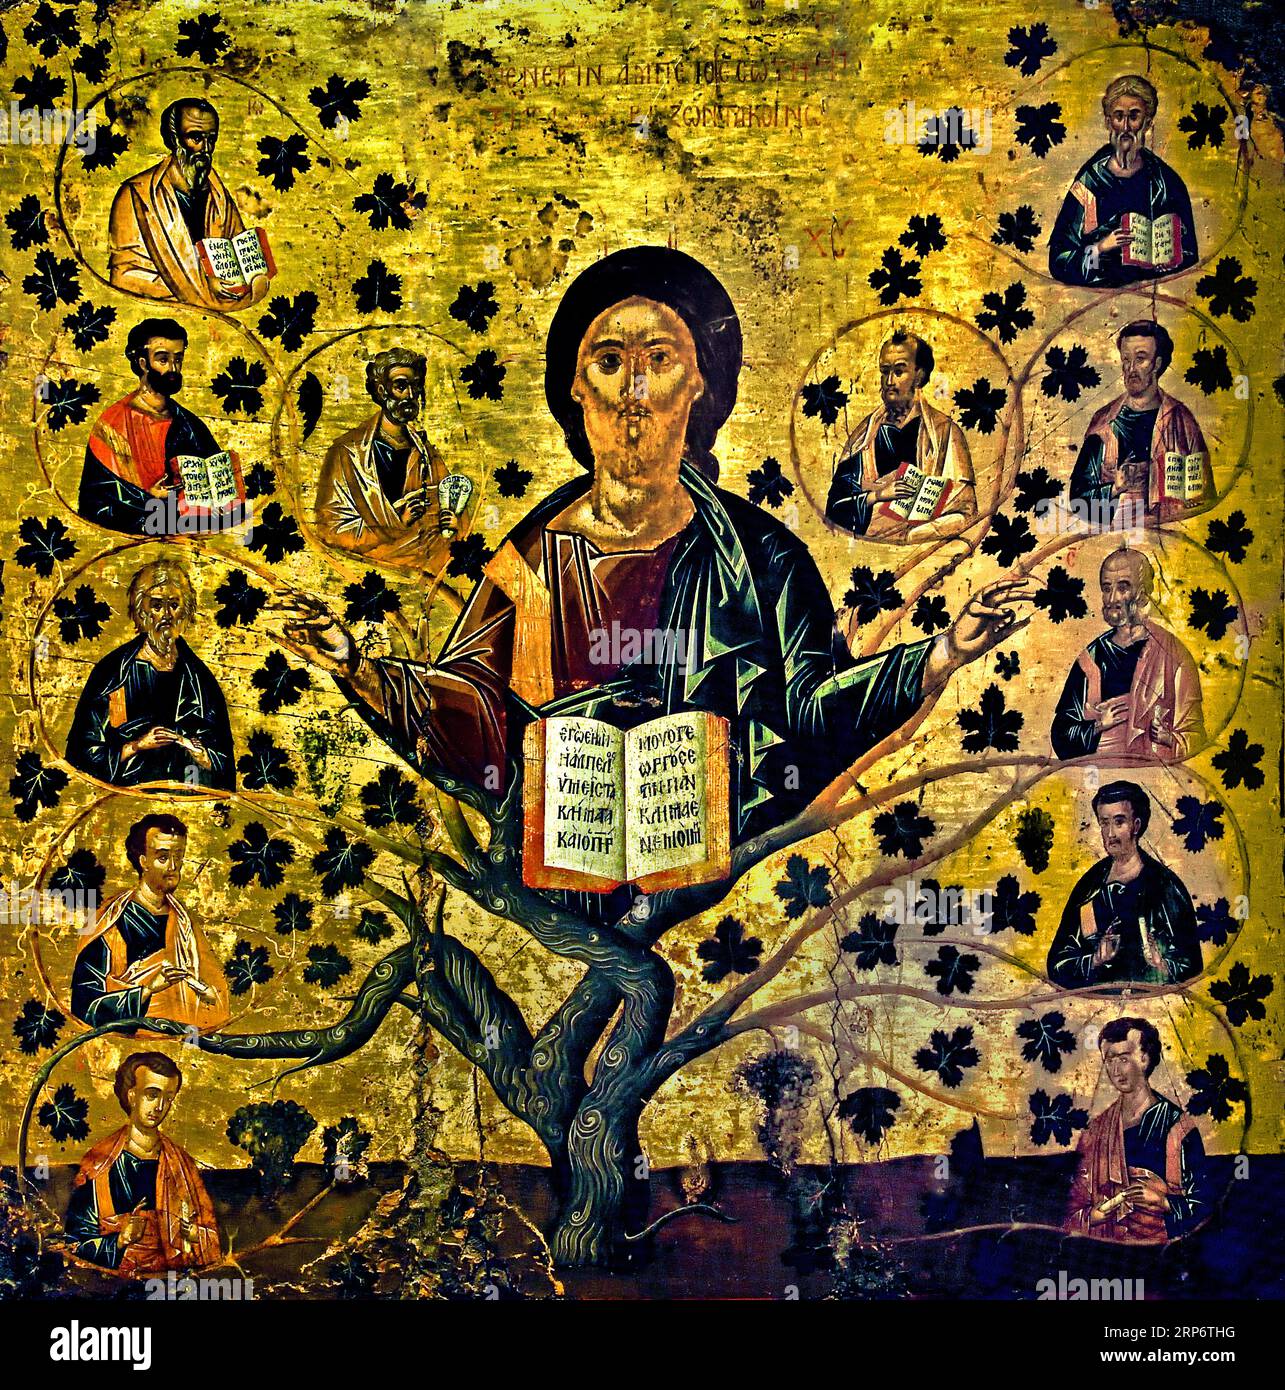 Christ la vraie Vigne, par Angelos Akotantos, Crète, 15e siècle Athènes Grèce Musée byzantin Église orthodoxe grecque ( icône ) Banque D'Images